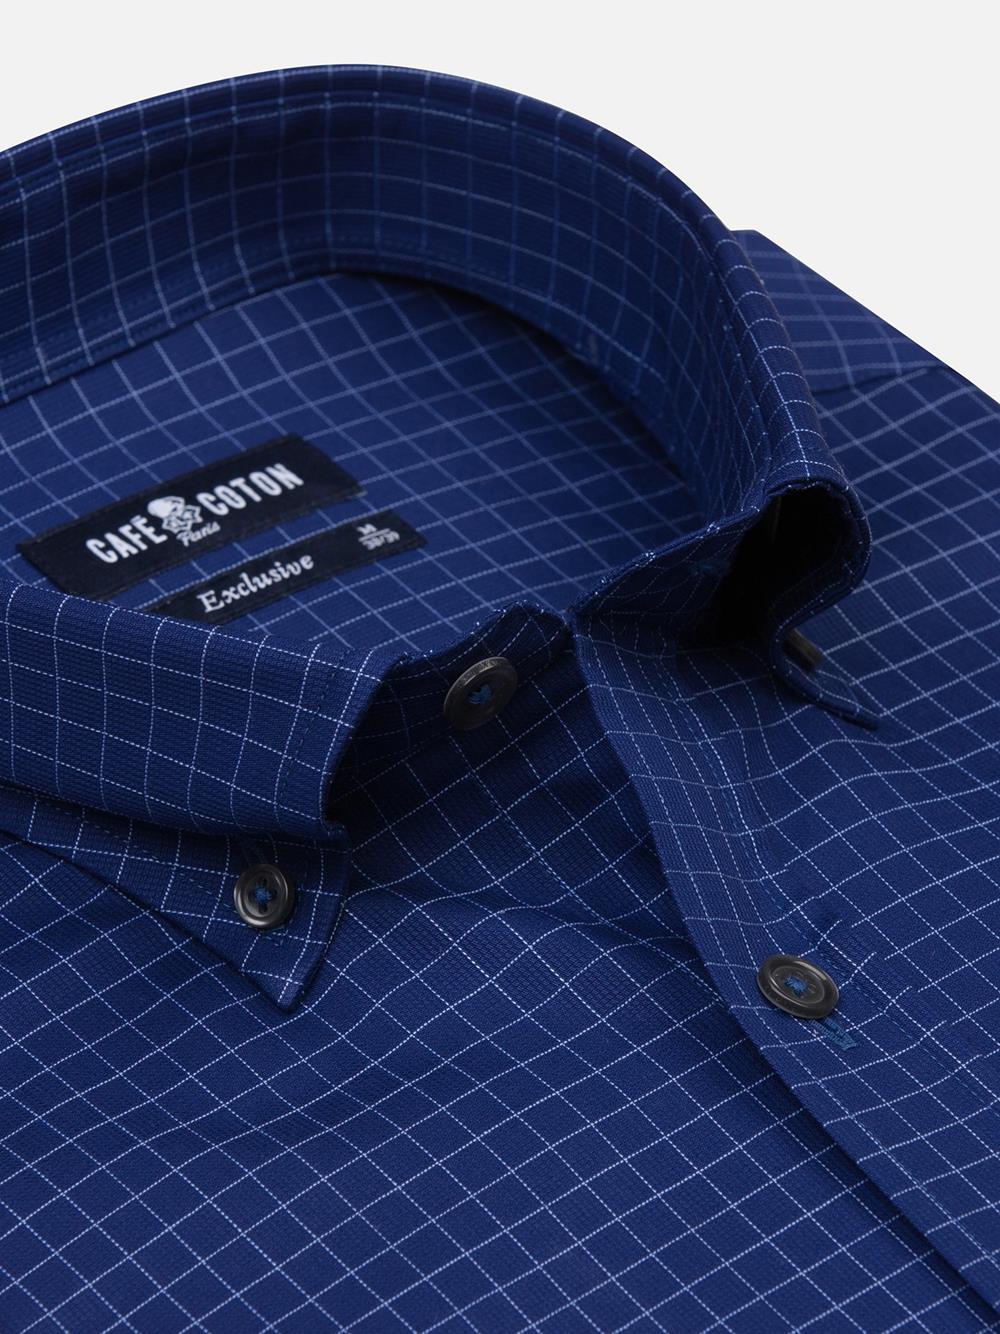 Clyde navy blue checked shirt - Button-down collar